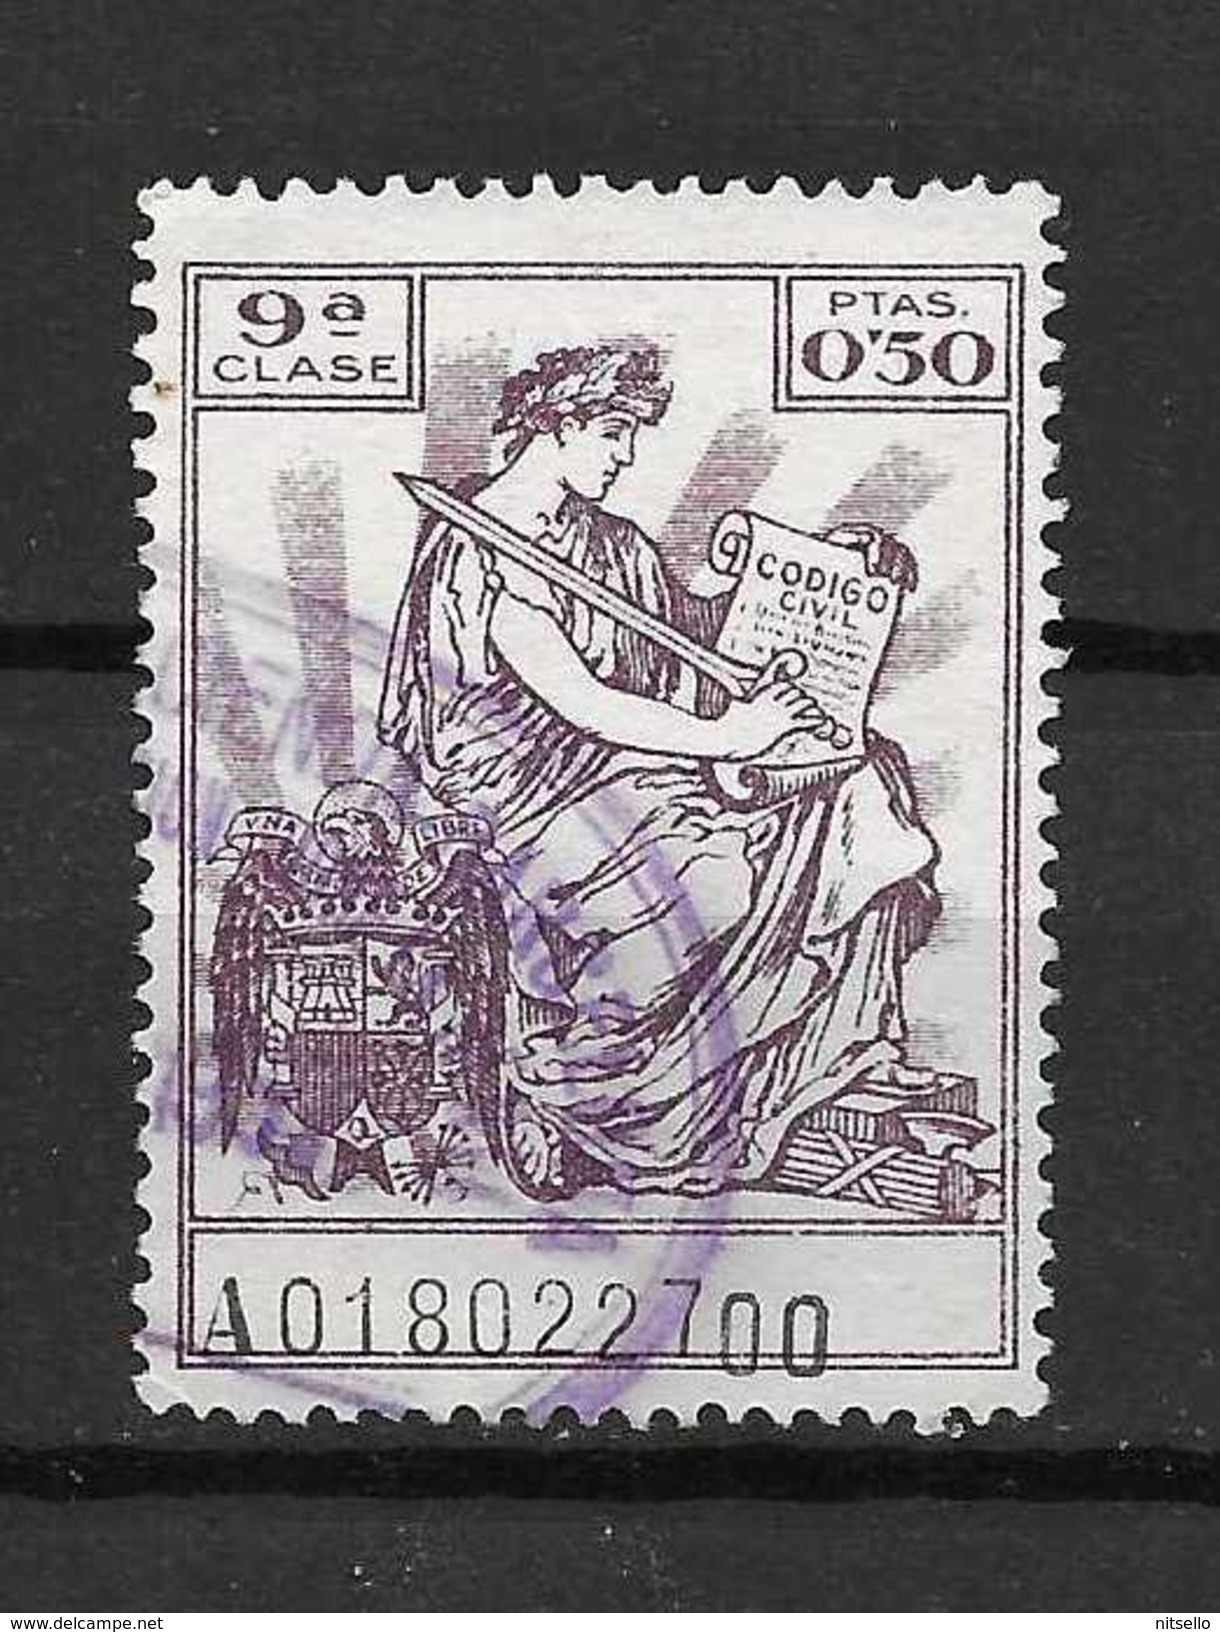 LOTE 1891 B   ///  ESPAÑA  FISCALES -   9ª CLASE - Steuermarken